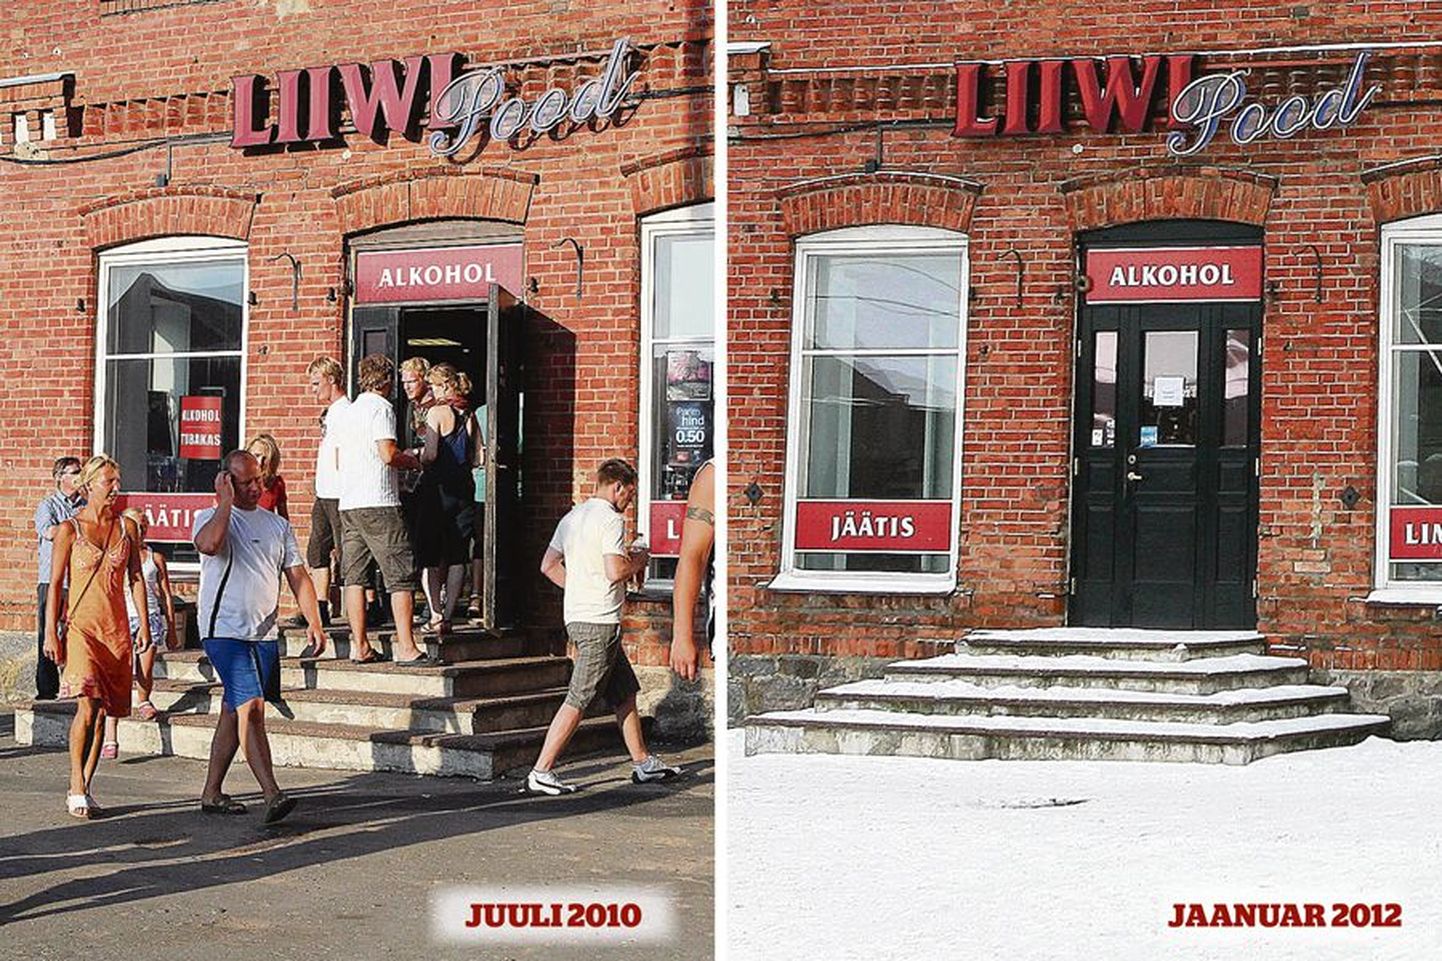 Sel ajal kui Liiwi pood veel töötas, muutus see neljal juulilõpu päeval Eesti üheks suuremaks alkoholikaupluseks. Ülejäänud ajal aastast äri kiratses ning tänavu pandi pood kinni.